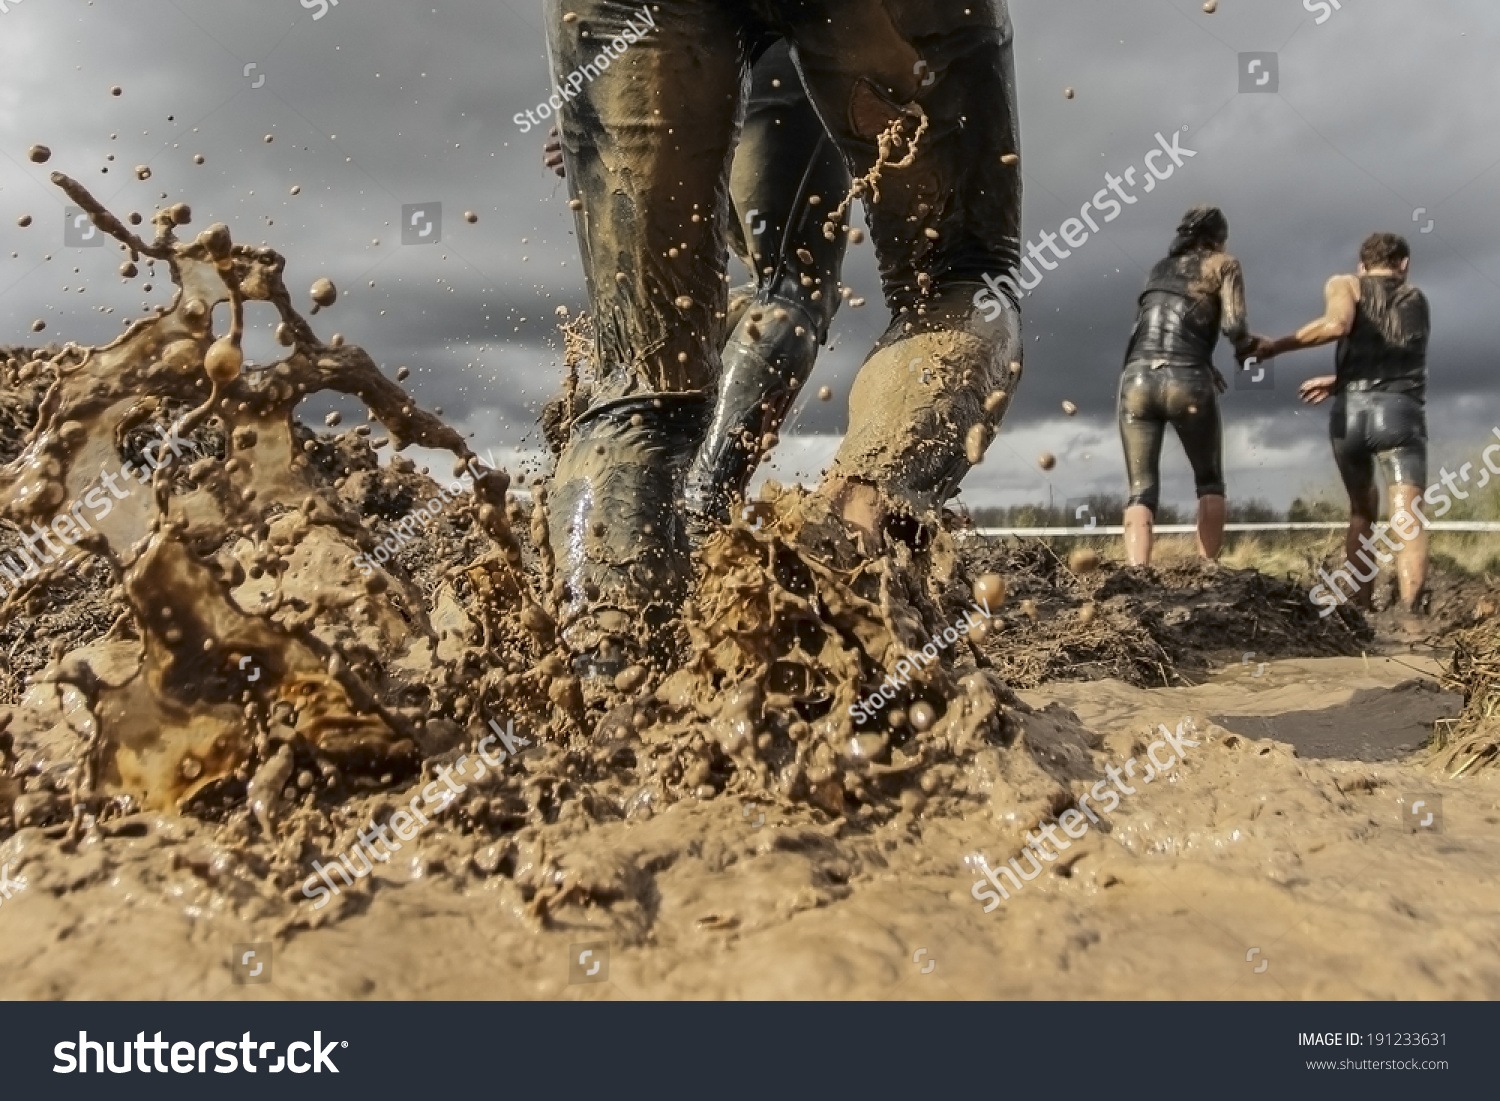 Mud race runner's muddy feet #191233631